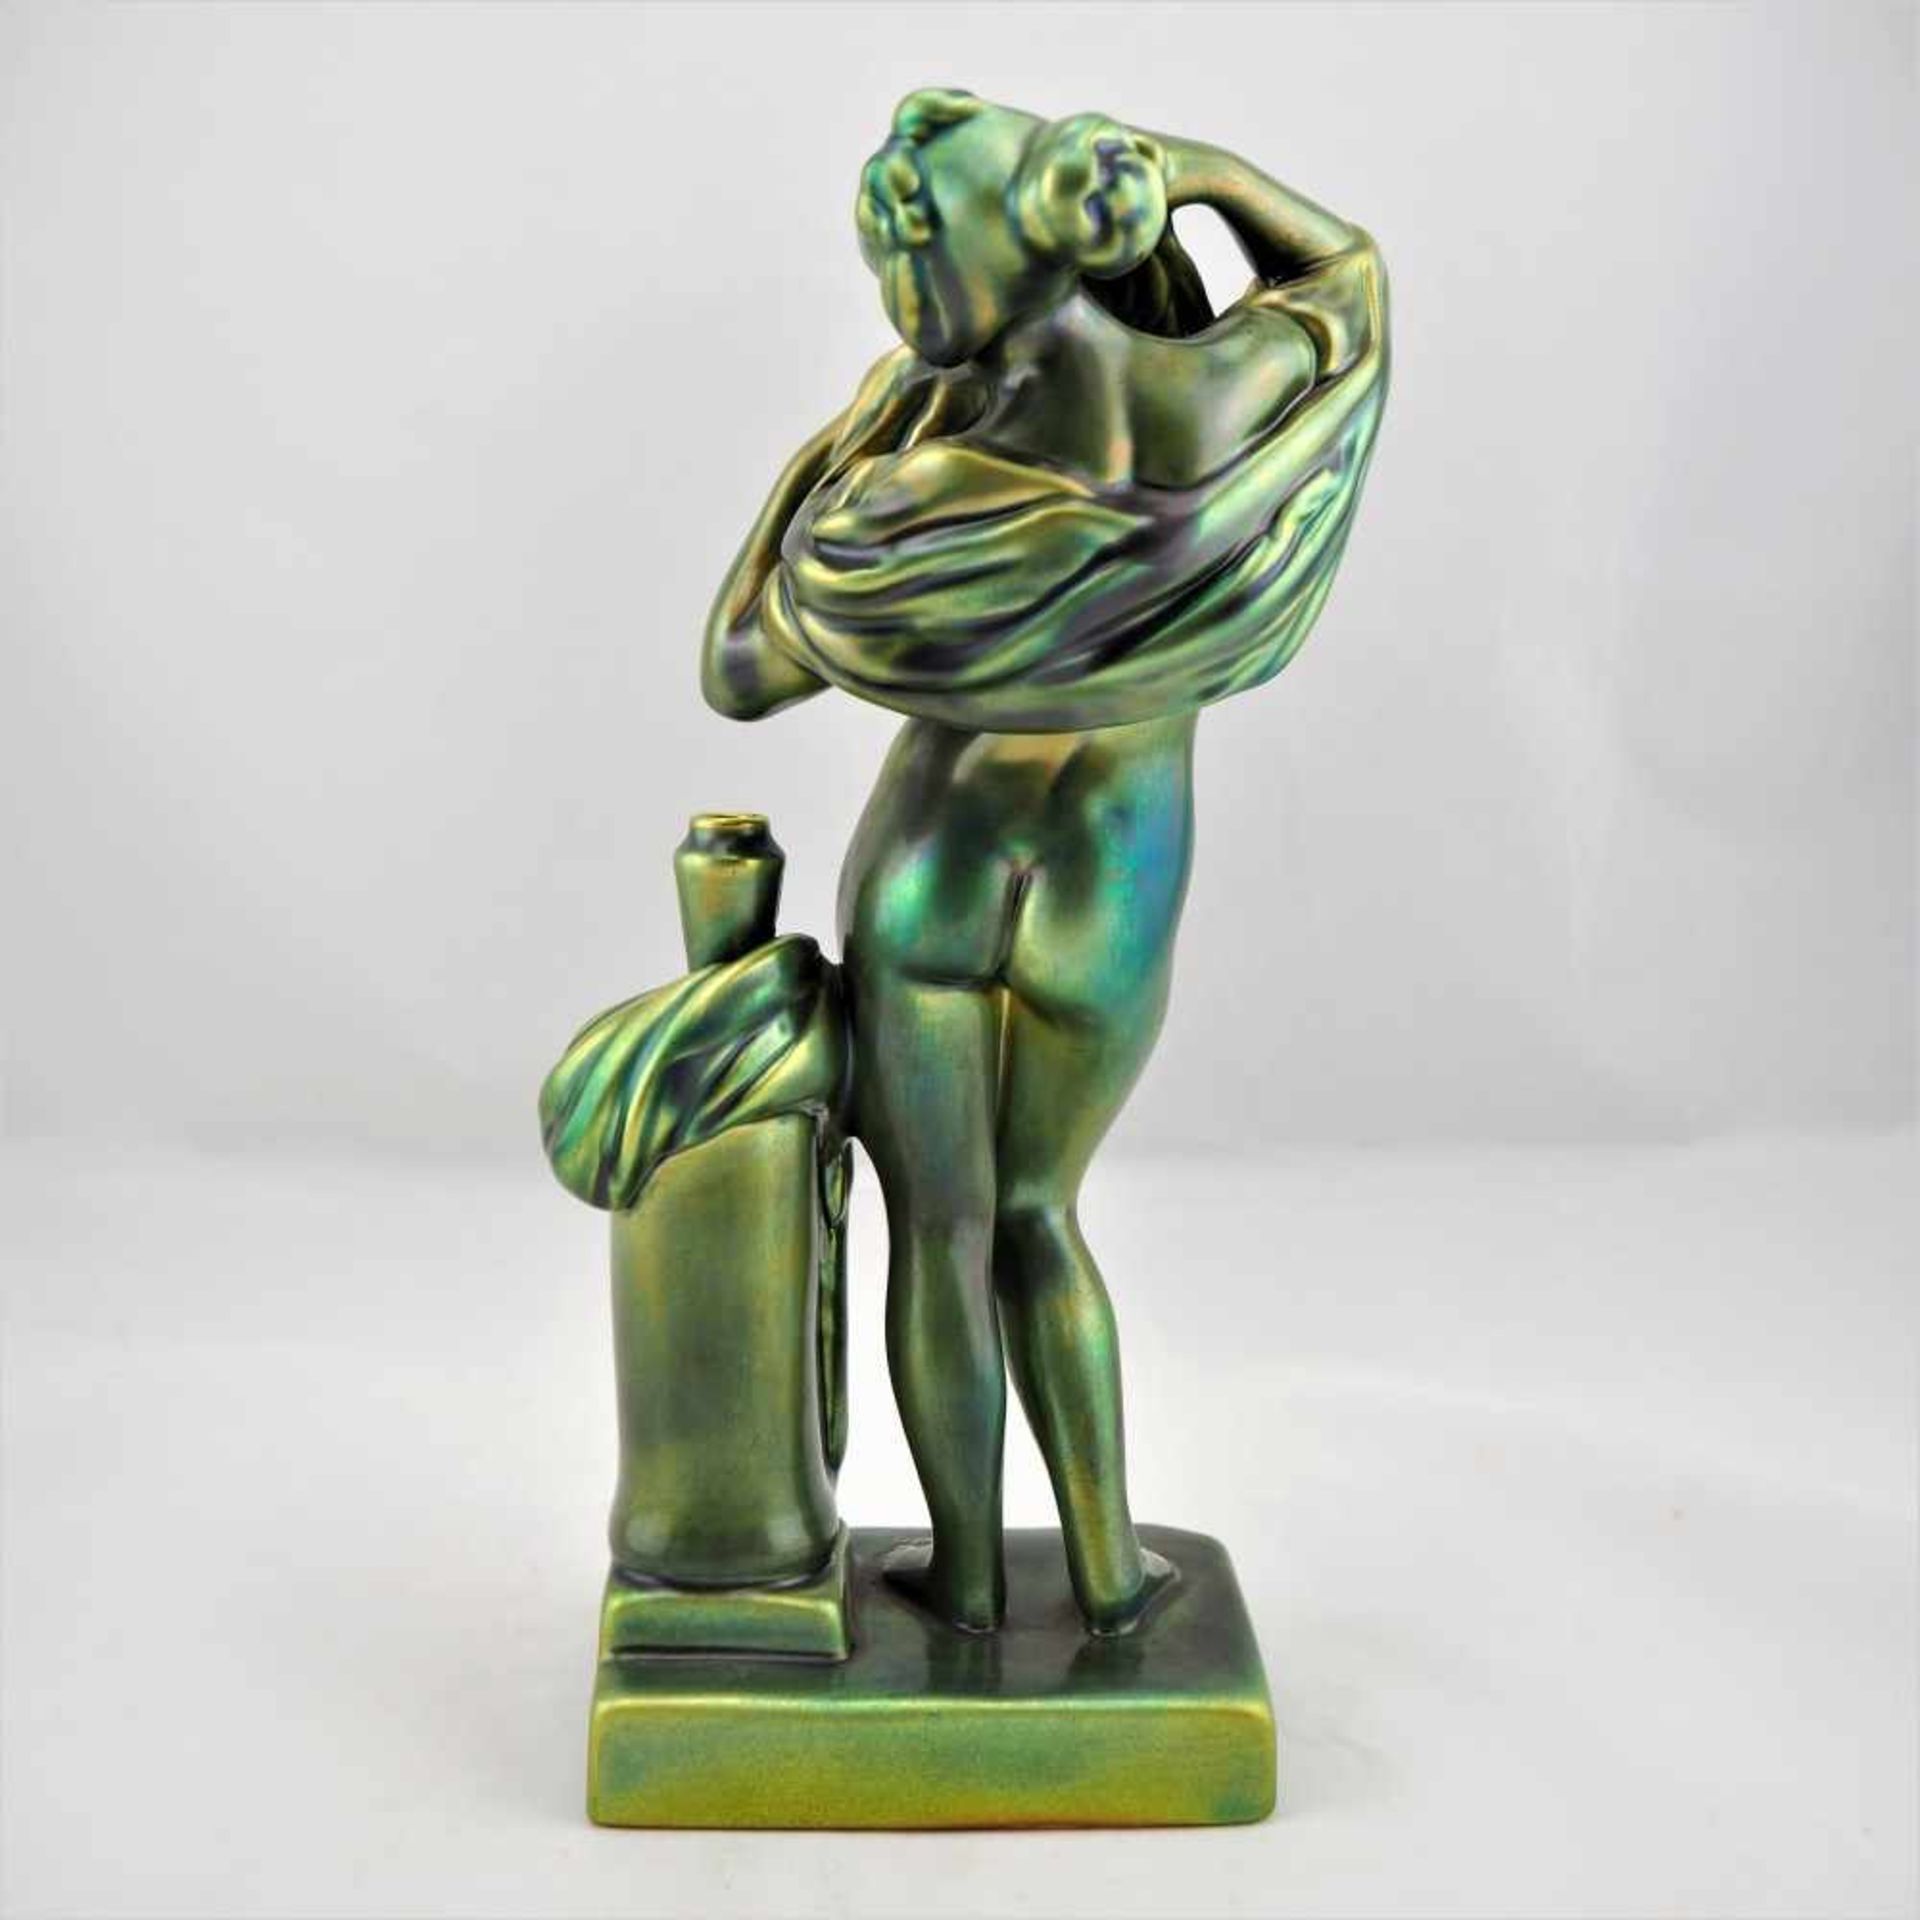 Porzellan Figur, wohl 50er JahreMit grün irisierender Glasur. Bodenmarke "Zsolnay". Wohl 1950er - Bild 2 aus 3